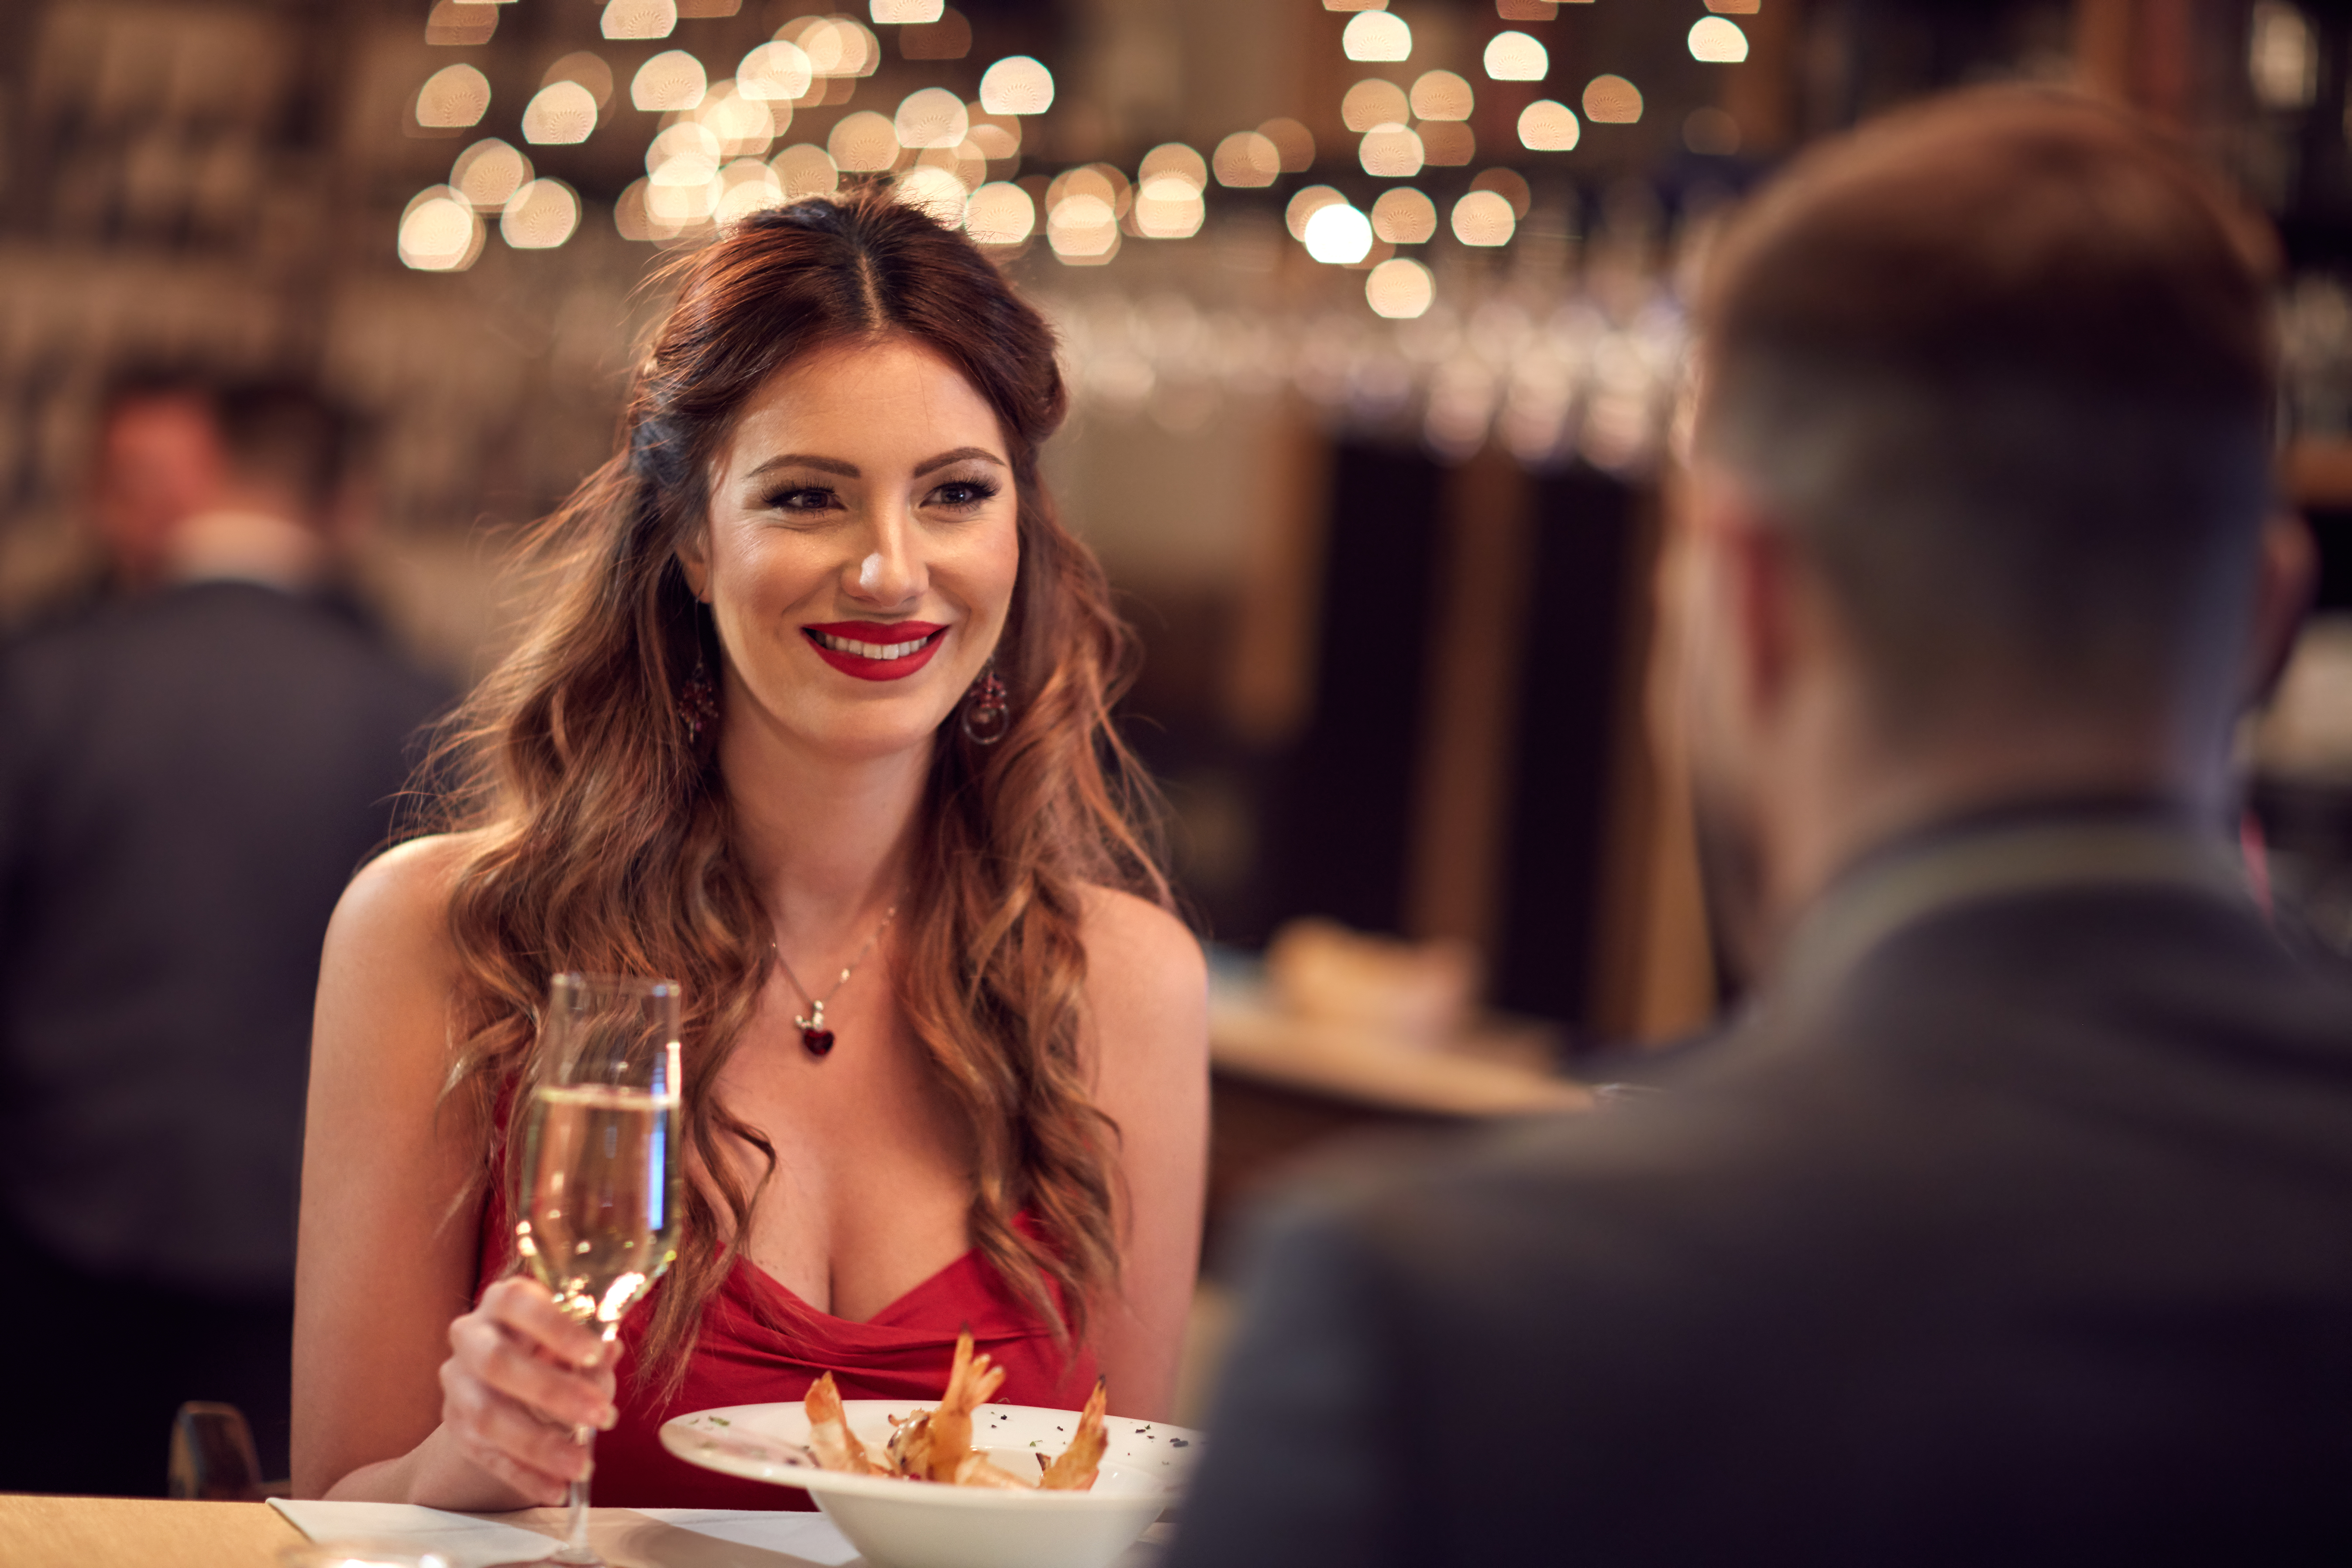 Femme en robe rouge dînant au restaurant avec son petit ami | Source : Shutterstock